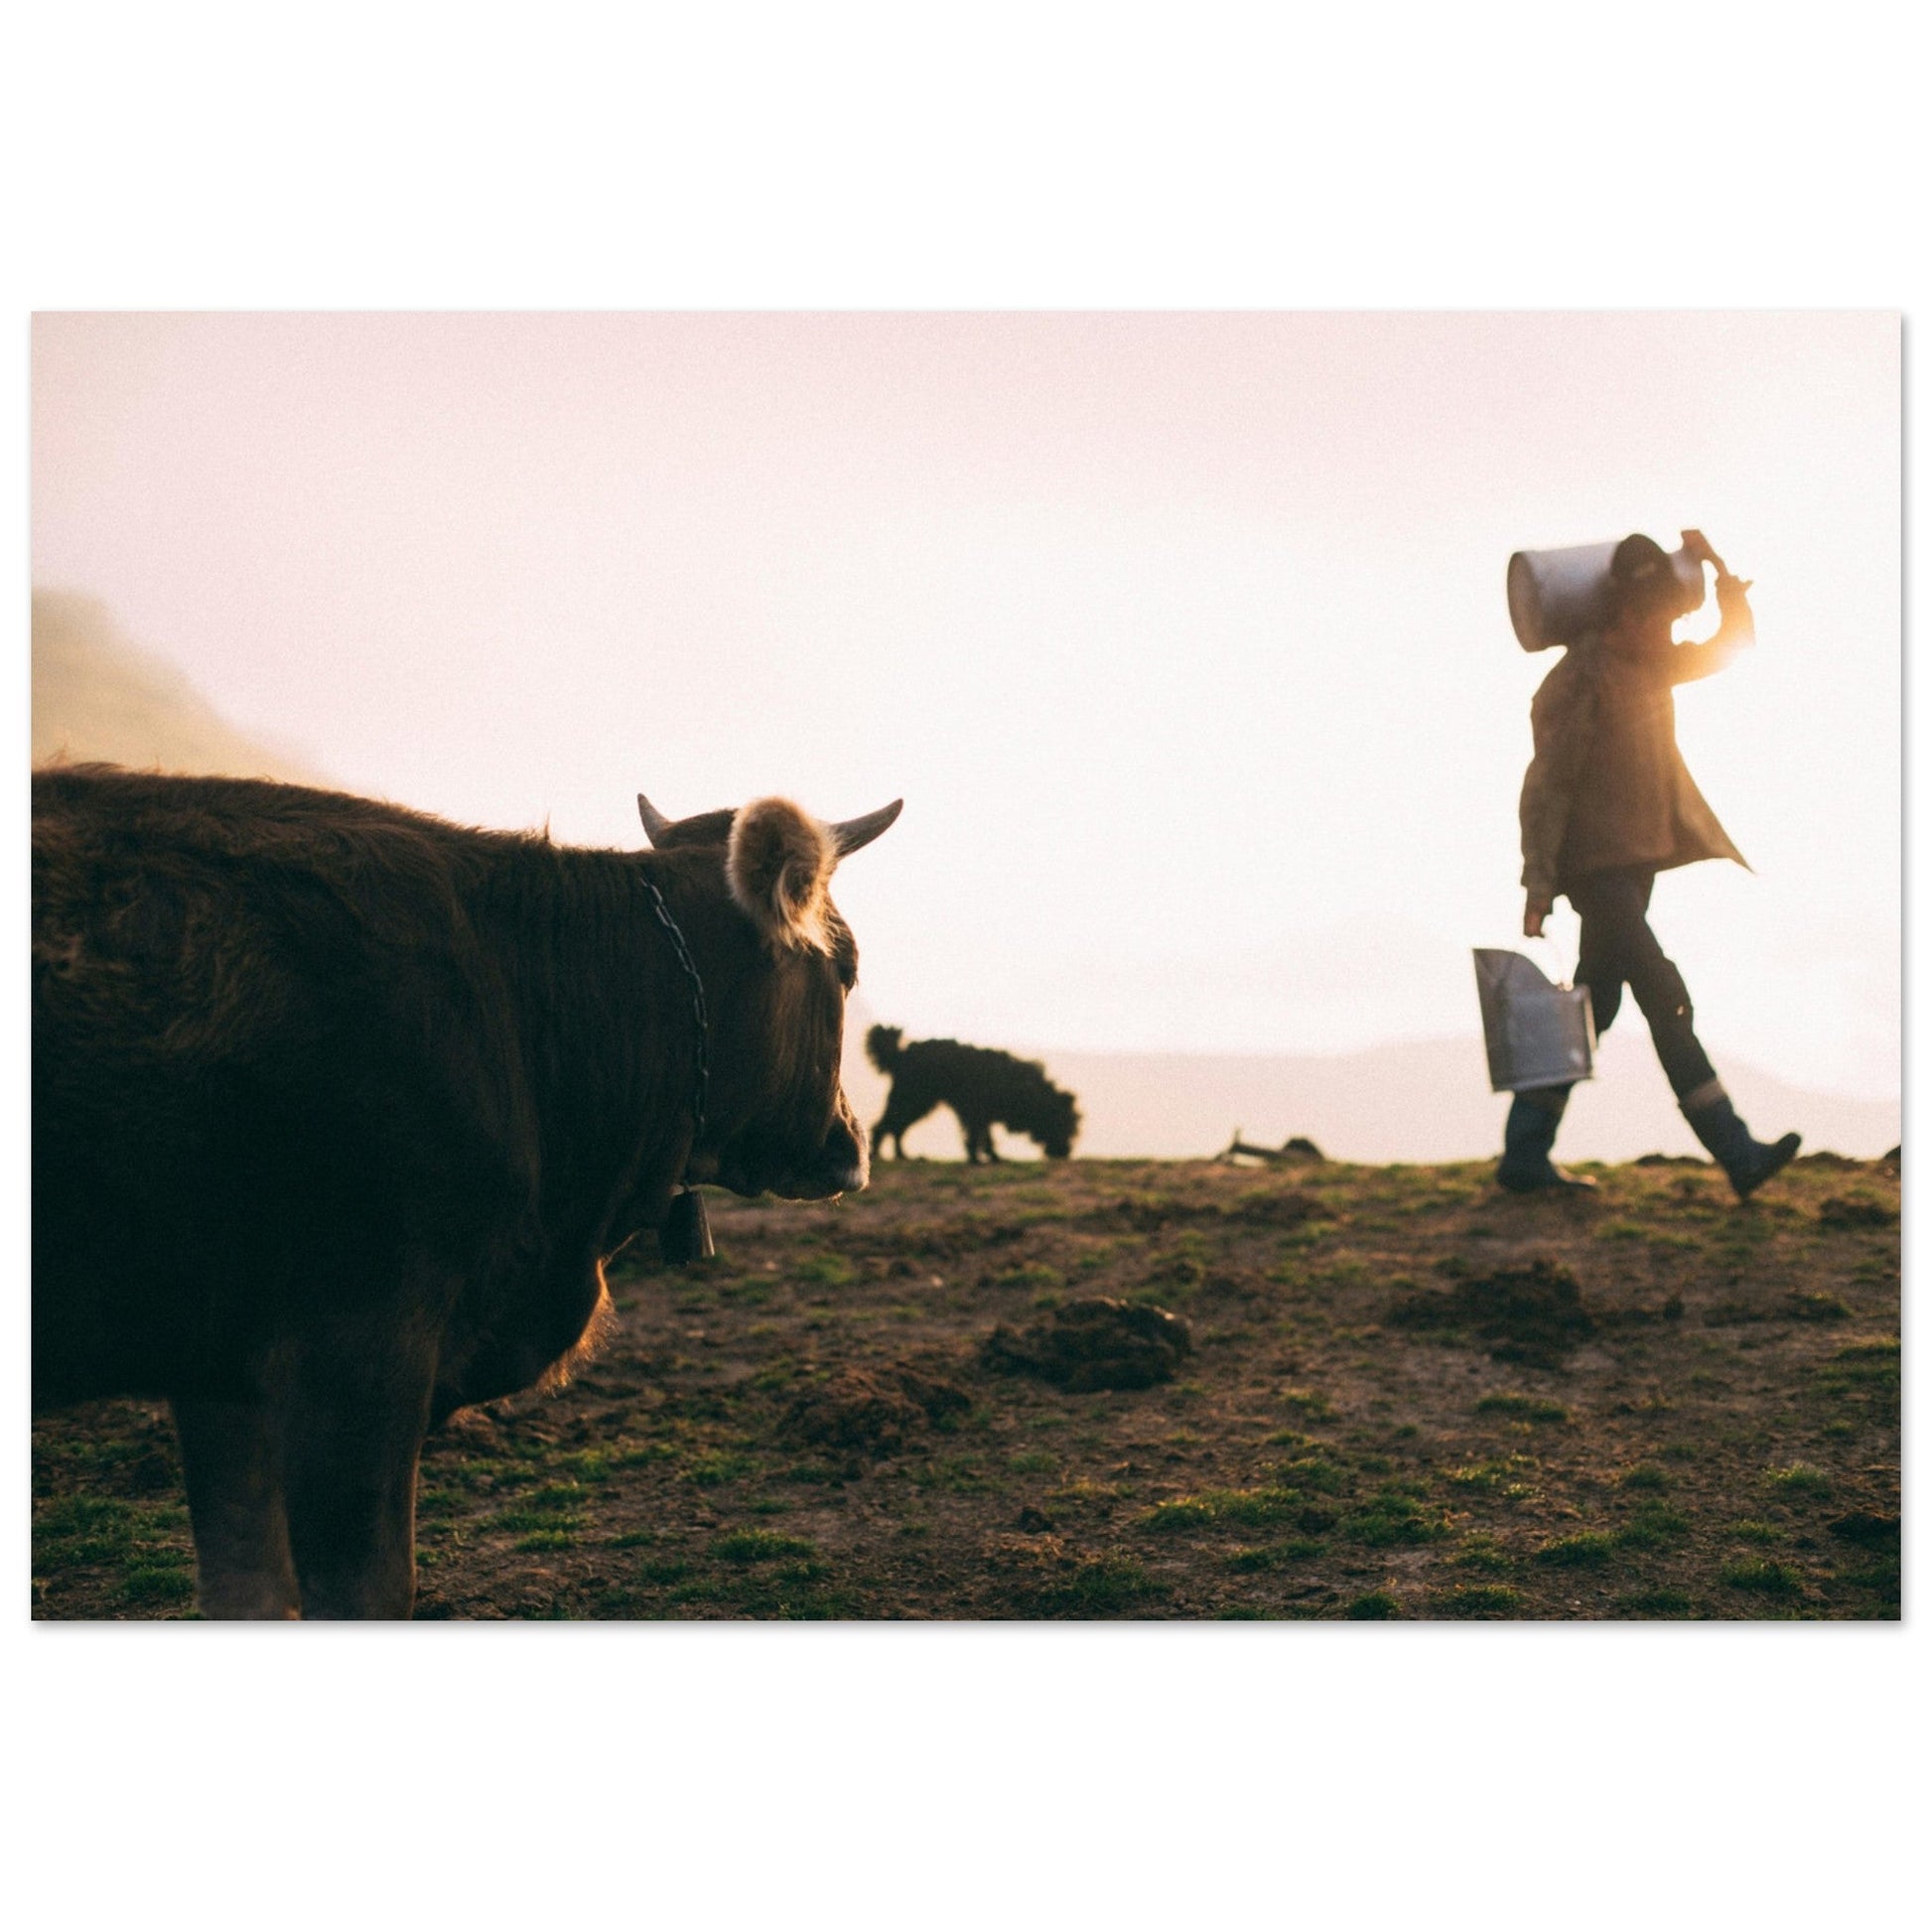 Vente Photo de vaches en Savoie #4 - Tableau photo paysage